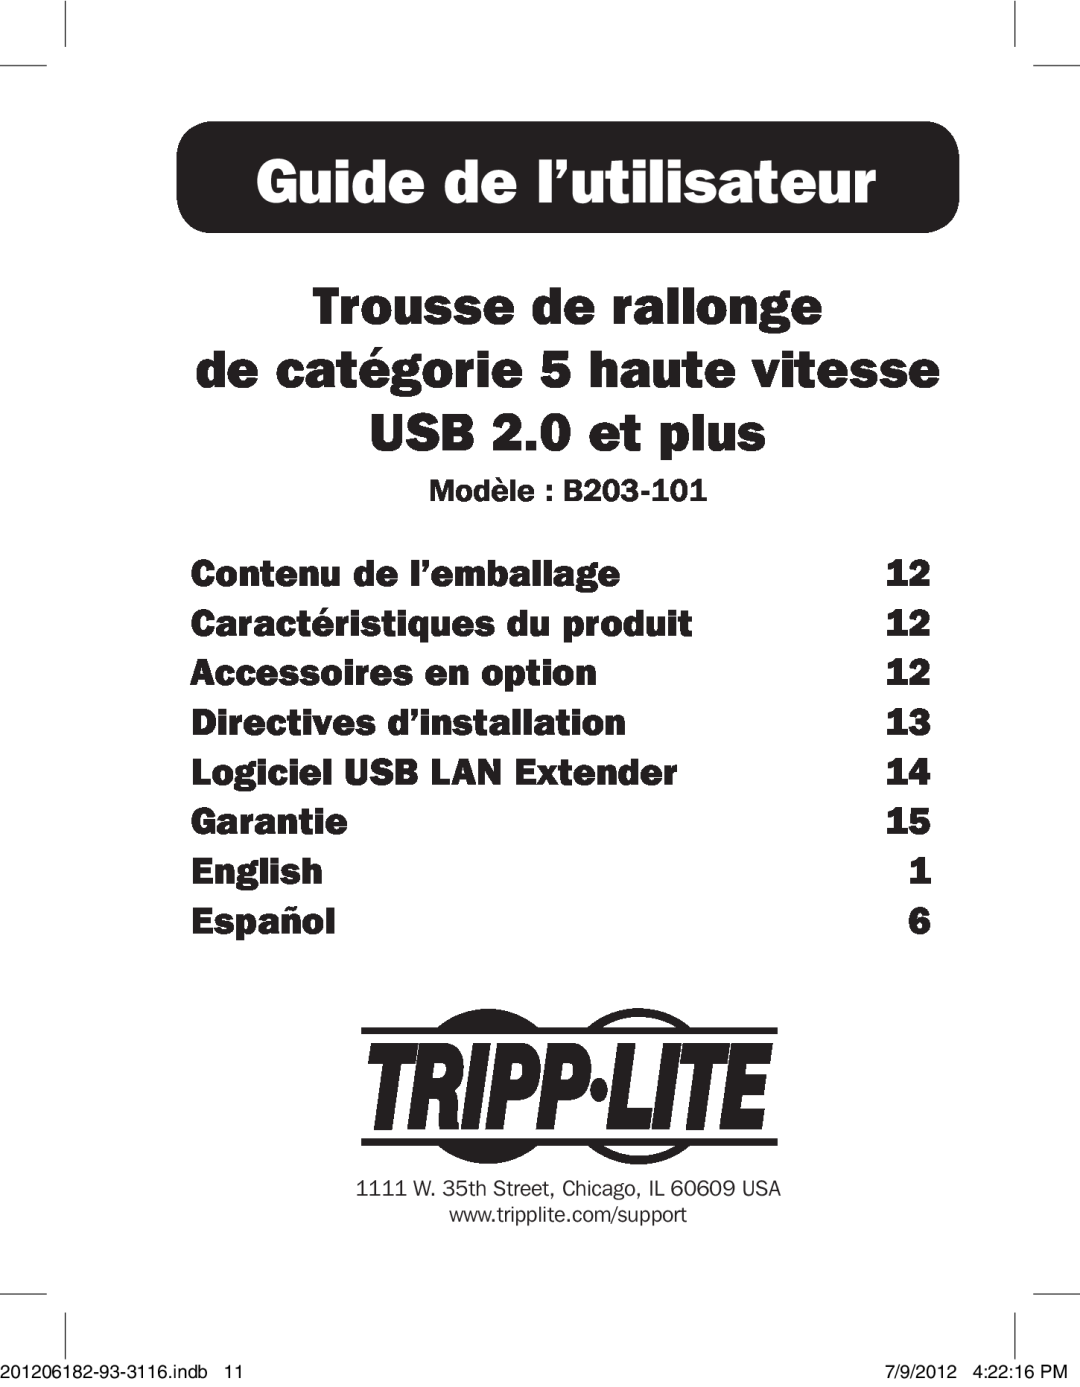 Tripp Lite B203-101 Guide de l’utilisateur, Trousse de rallonge de catégorie 5 haute vitesse USB 2.0 et plus, Garantie 